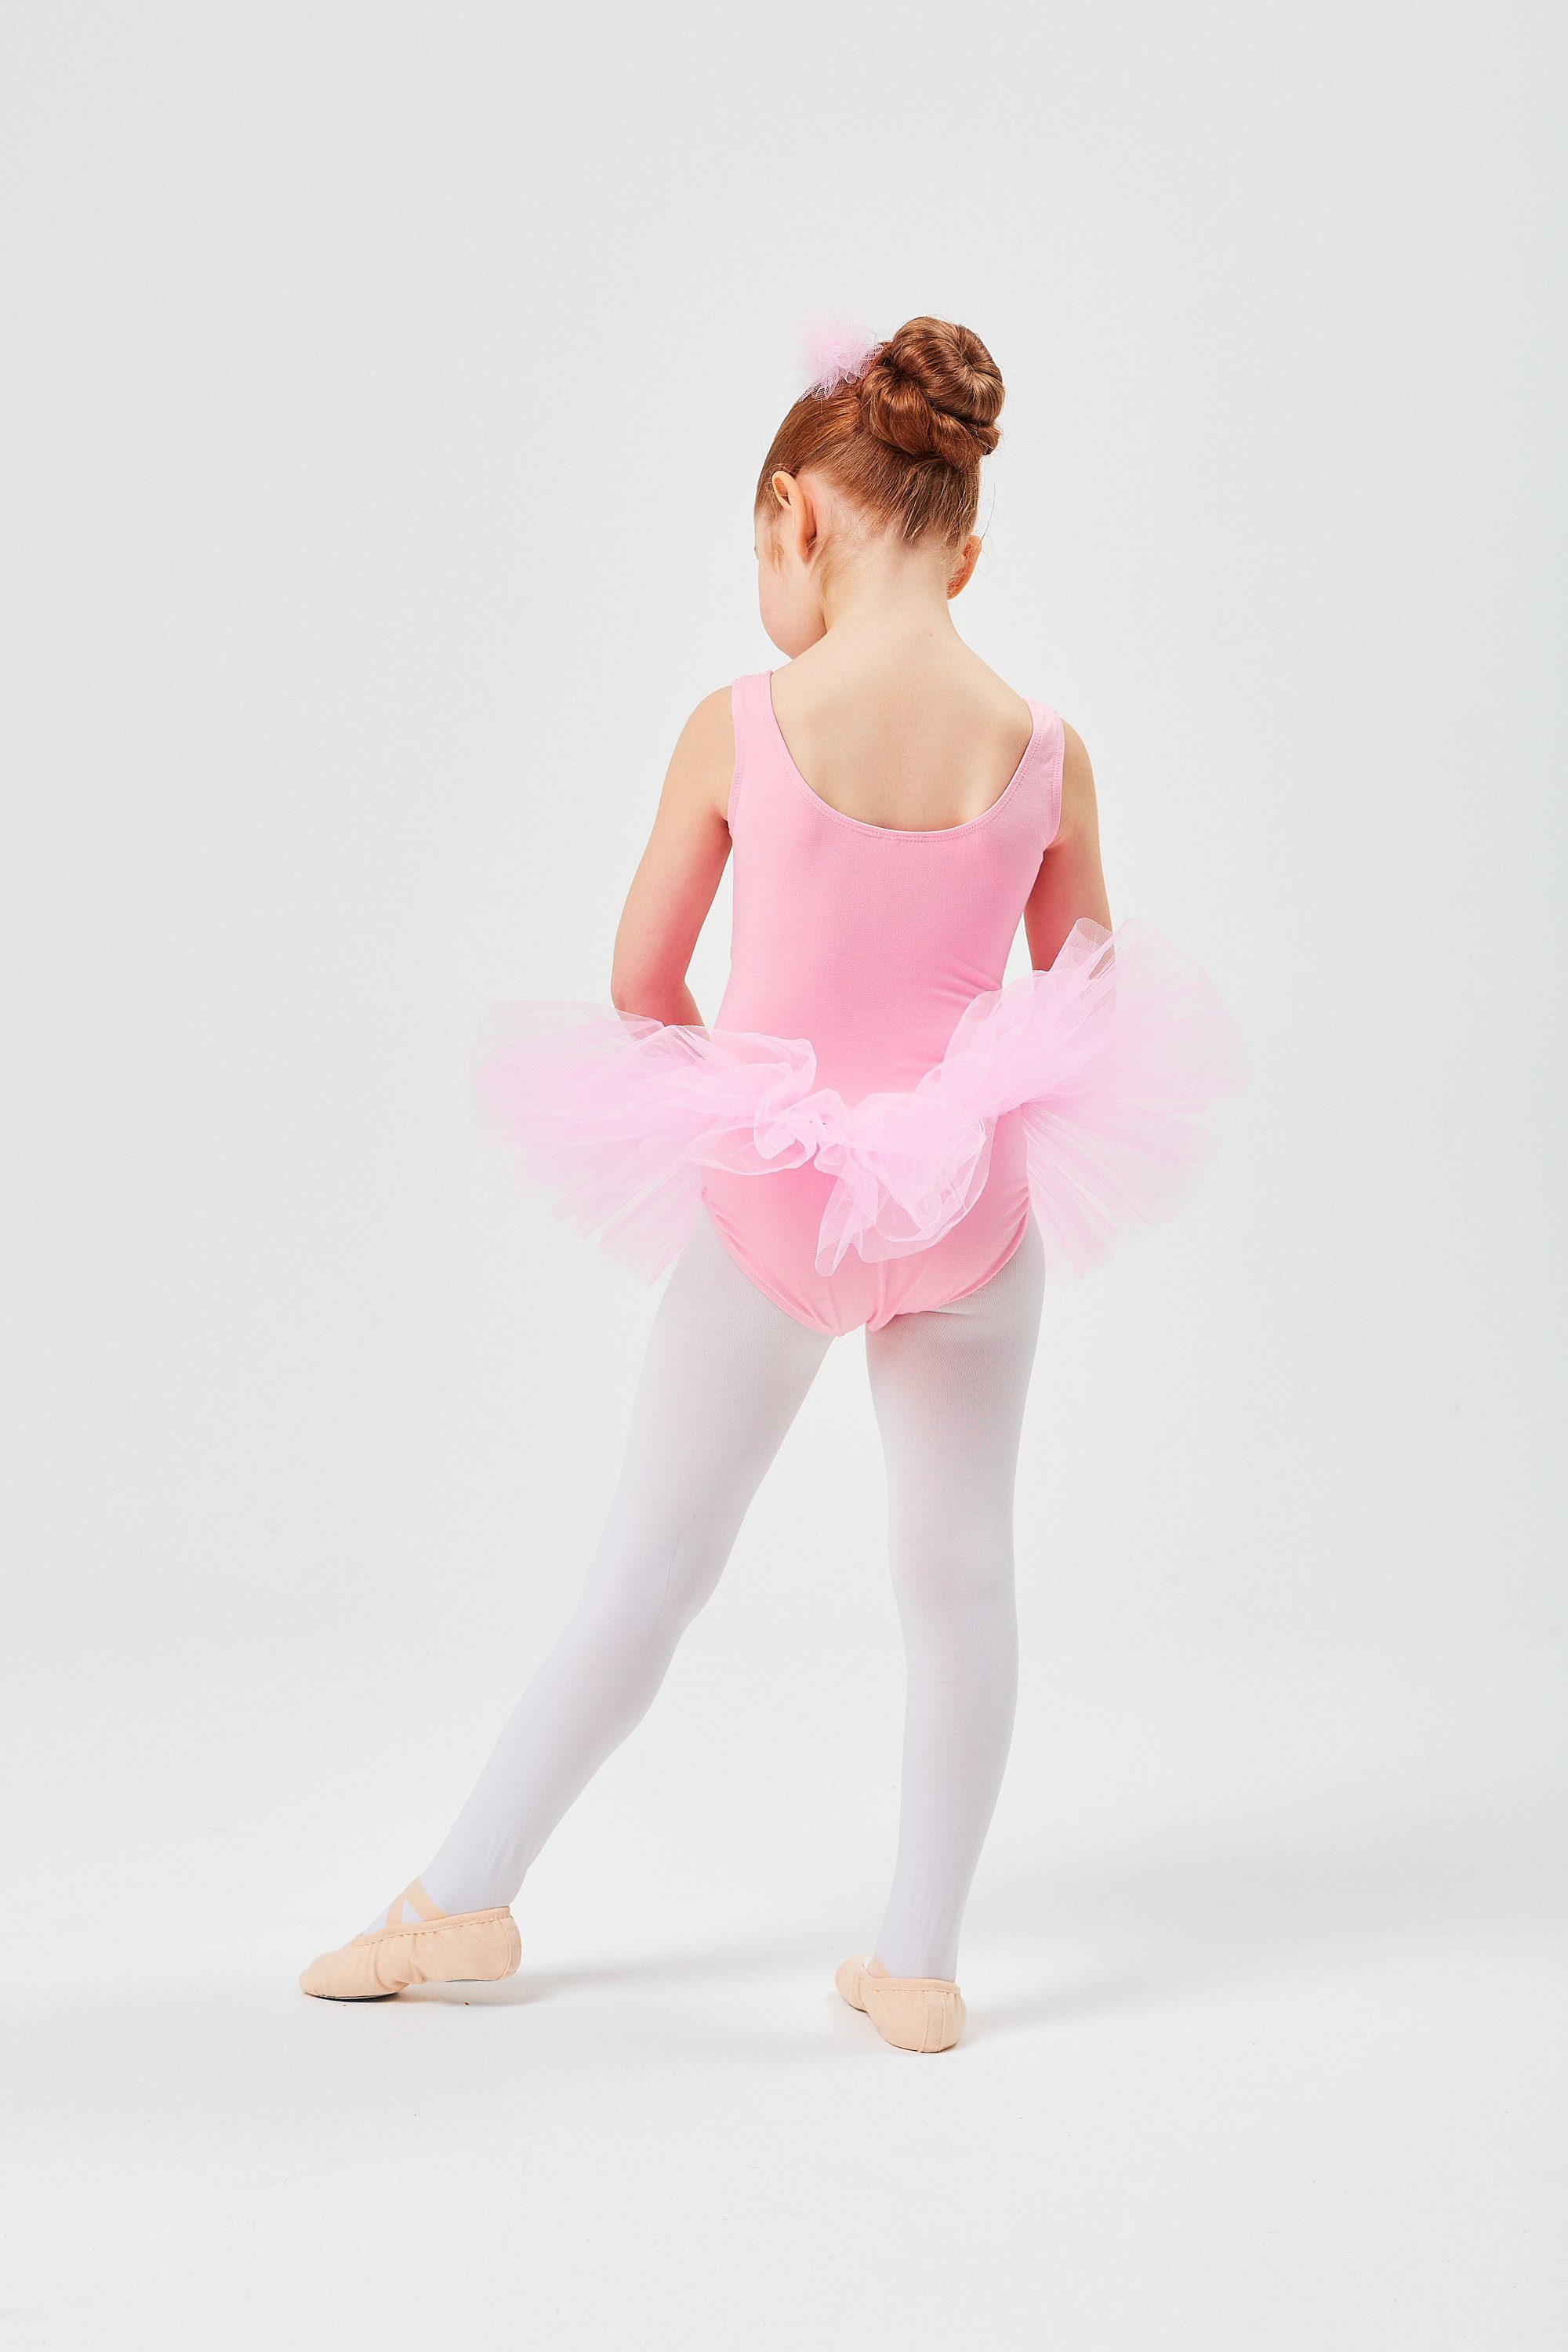 Tüllkleid Baumwolle, rosa Ballett Anabelle Ballettkleid tanzmuster Tutu weicher für Mädchen ärmellos aus